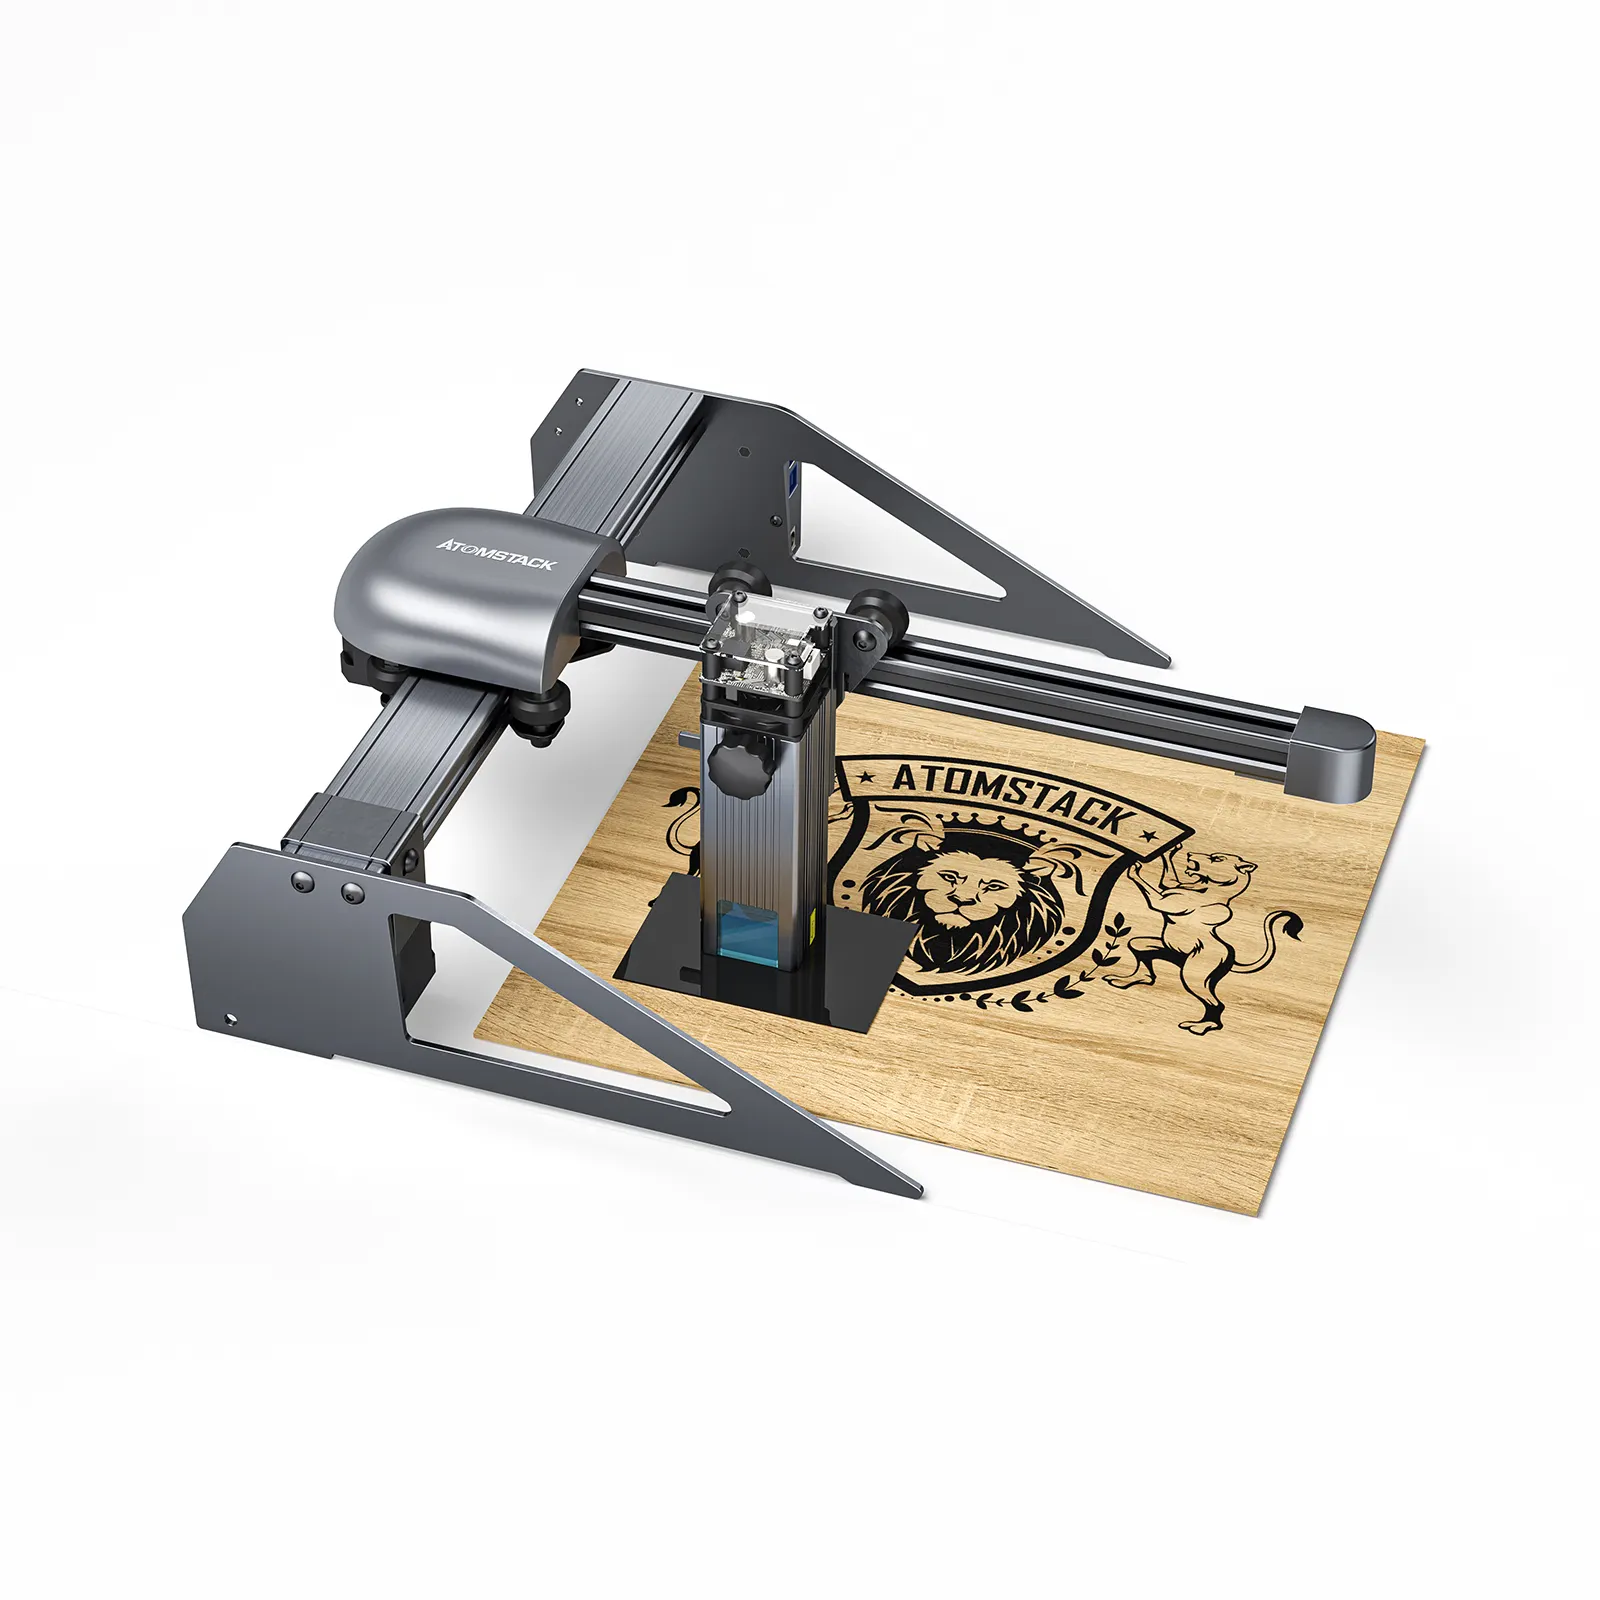 ATOMSTACK P7 M40 40W Low Price Laser Cutter Wood Metal Printer Marking Portable Laser Engraving Machine